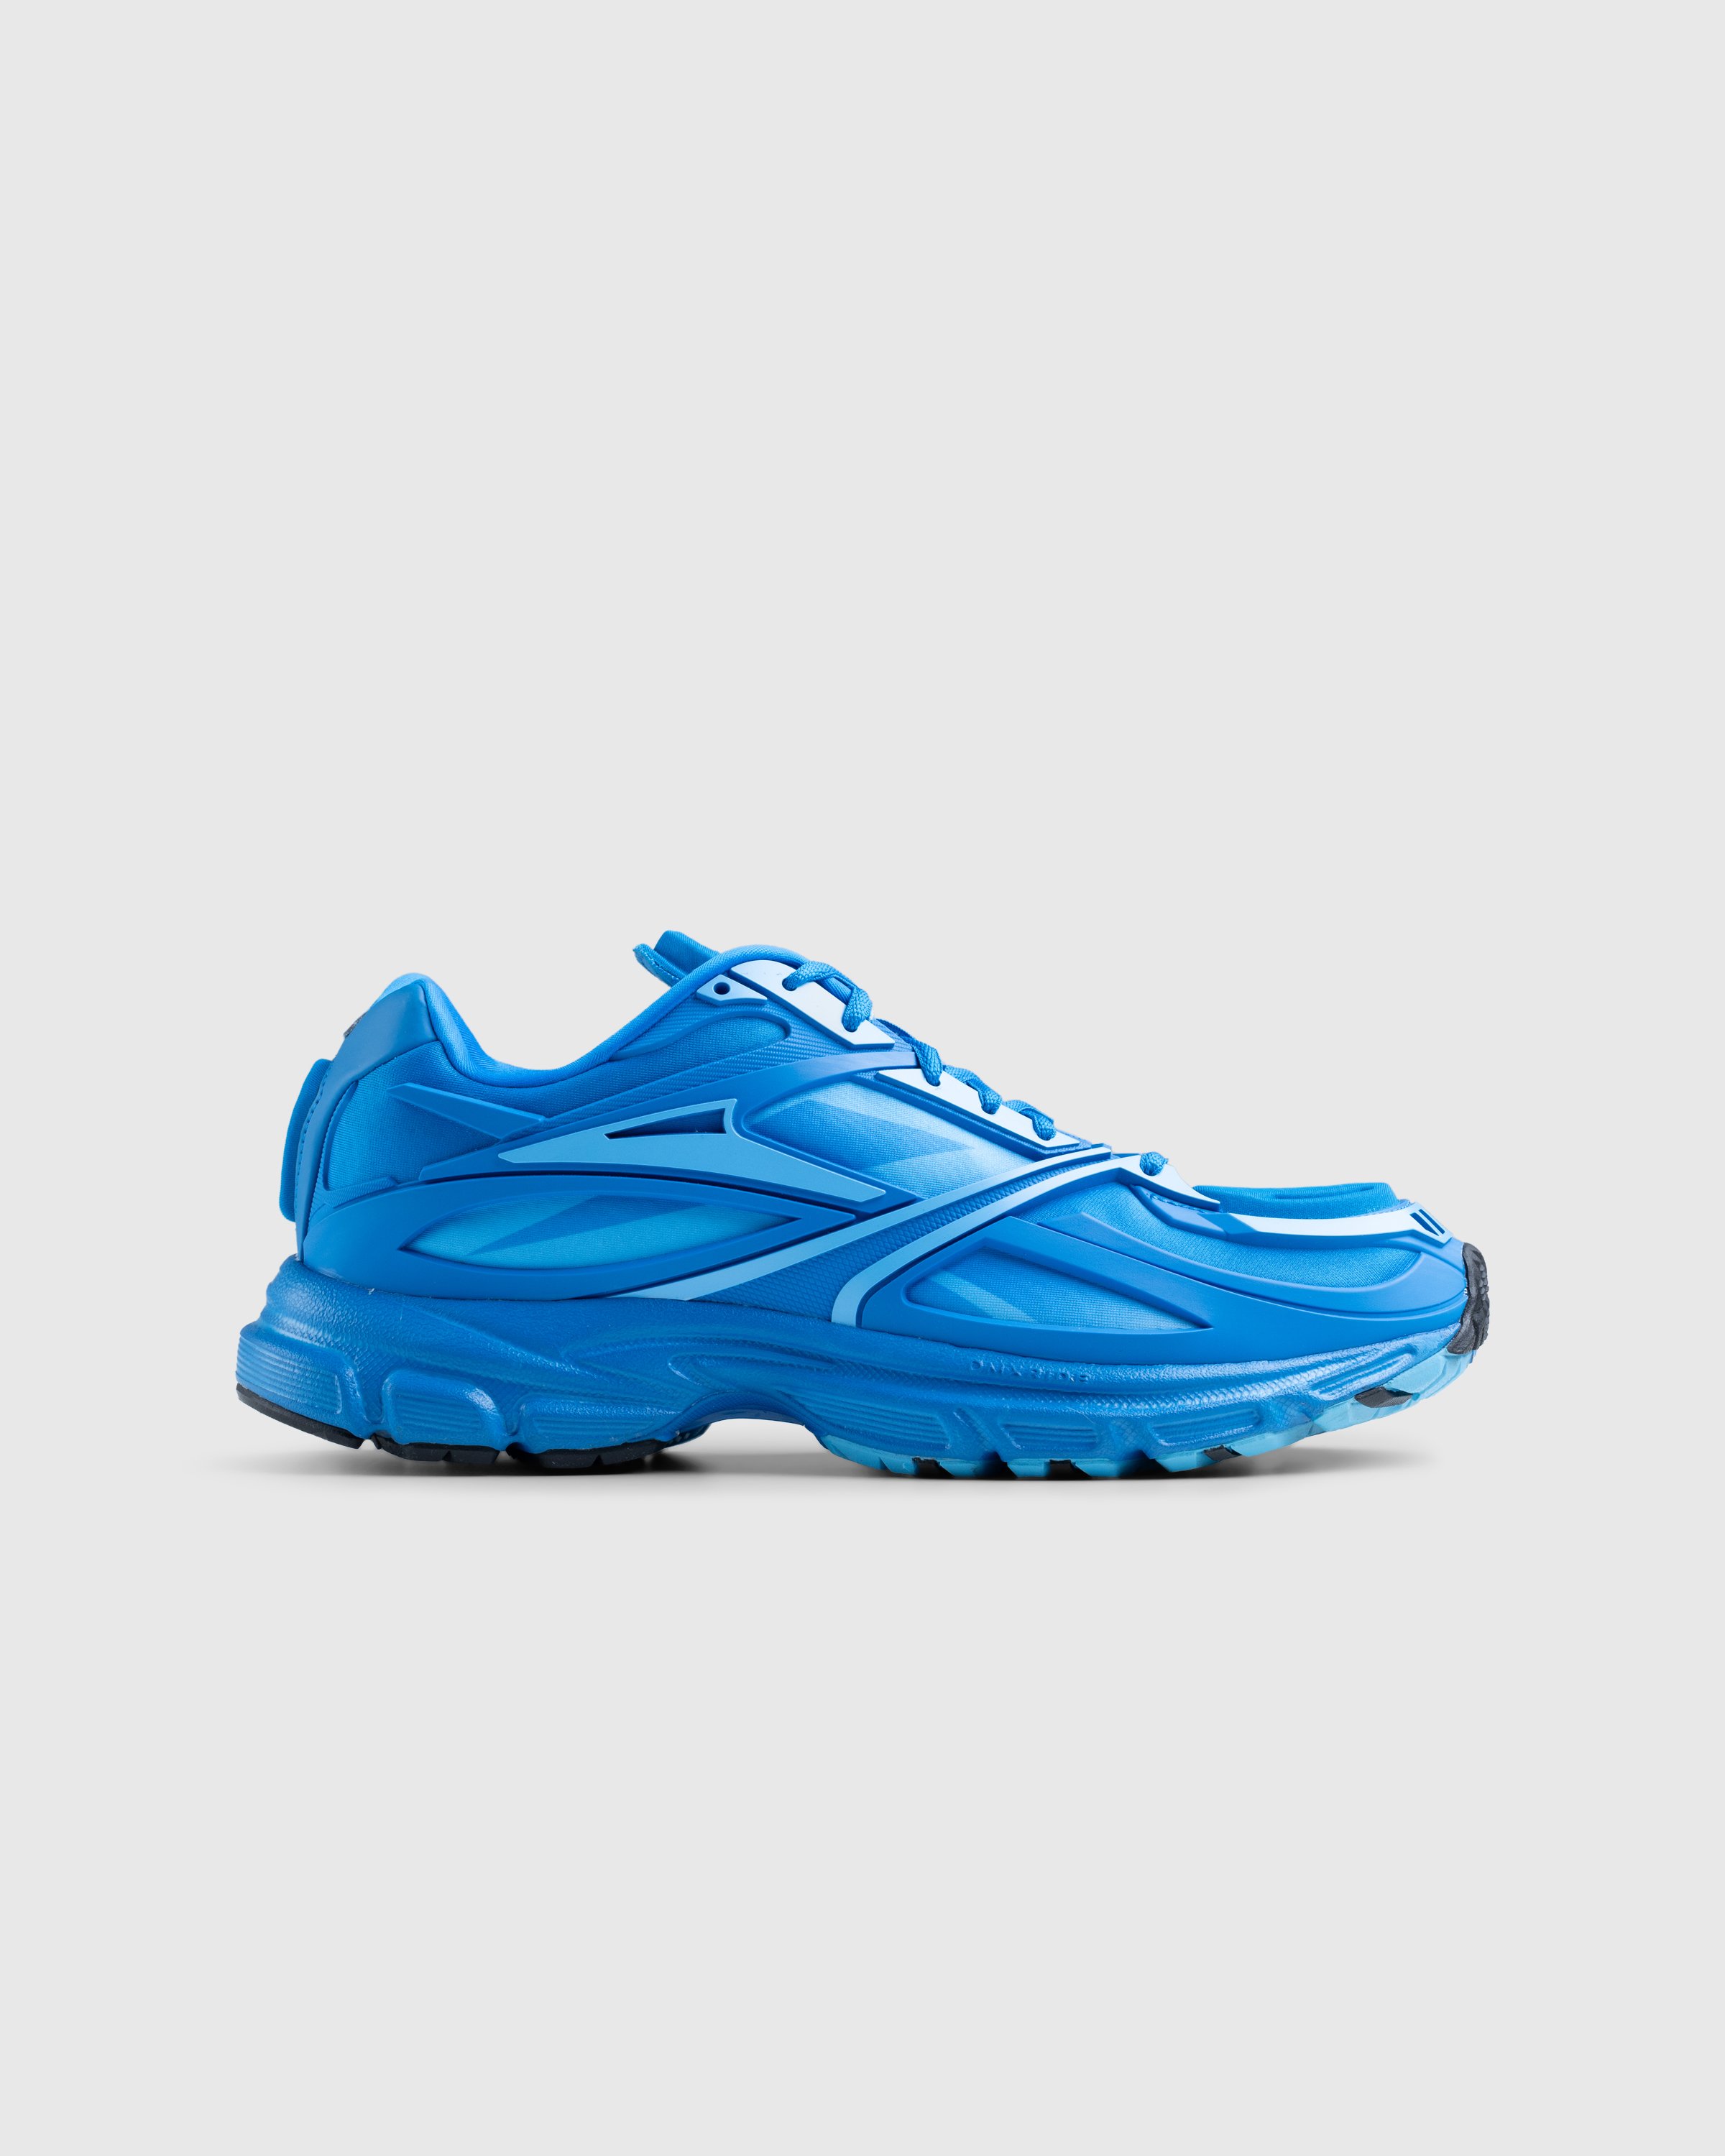 Reebok - PREMIER ROAD LIGHT BLUE/LIGHT BLUE - Footwear - Blue - Image 1